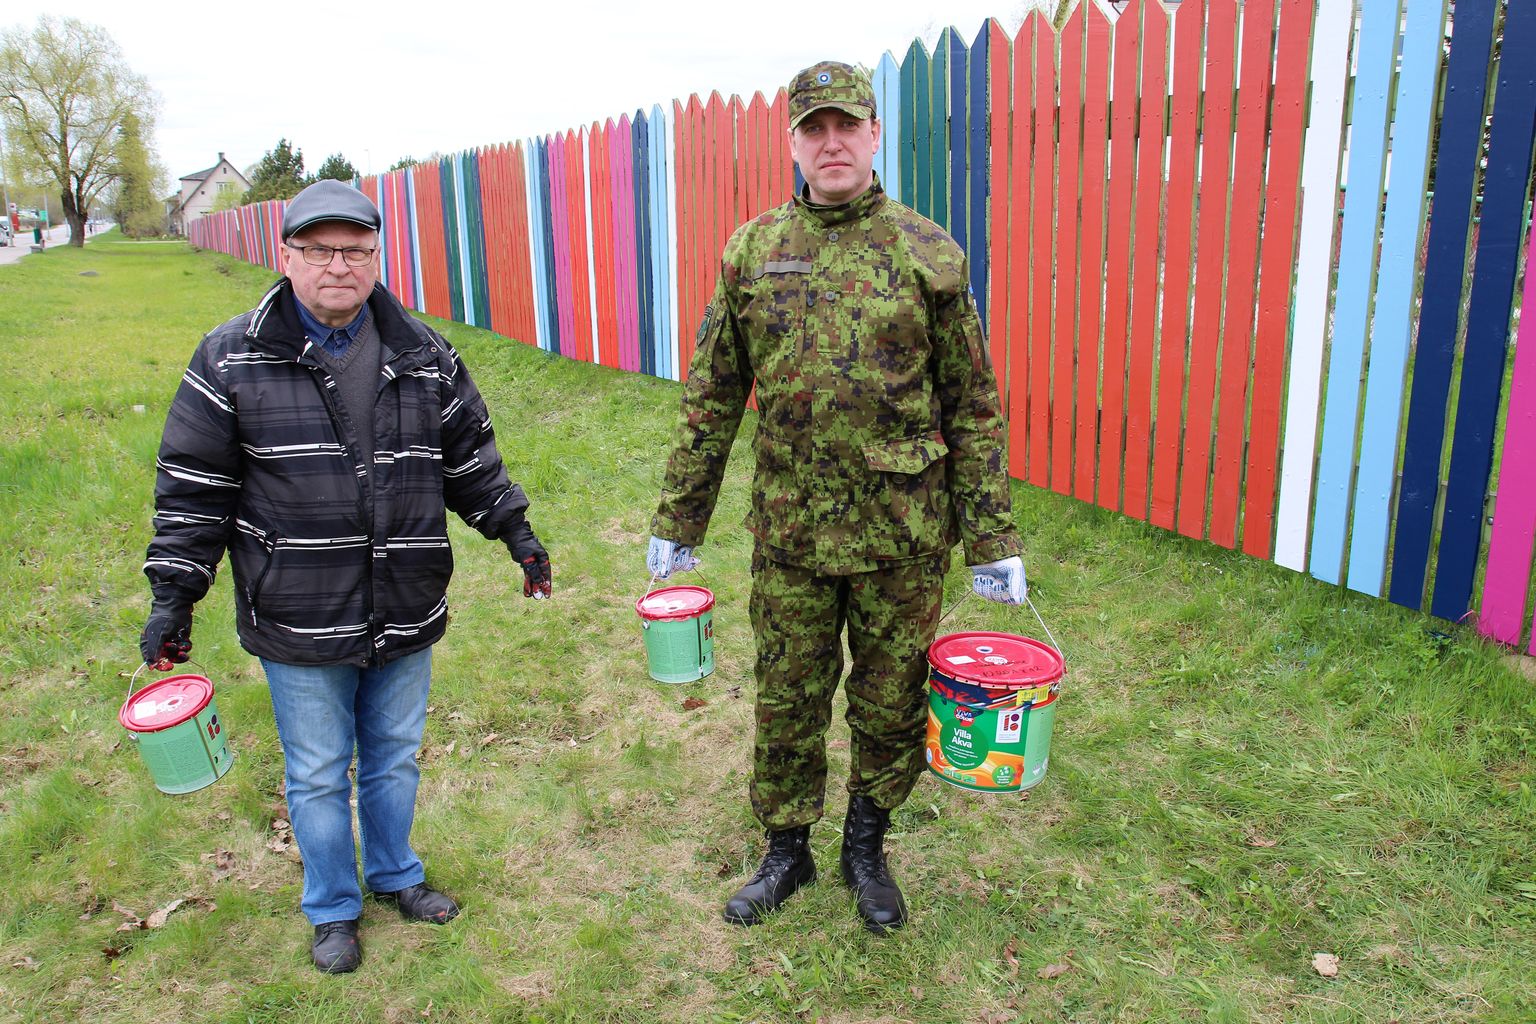 Võru linna talgulised, majandusspetsialist Egon Taal (vasakul) ja linnapea Anti Allas värskelt värvitud aia ees.